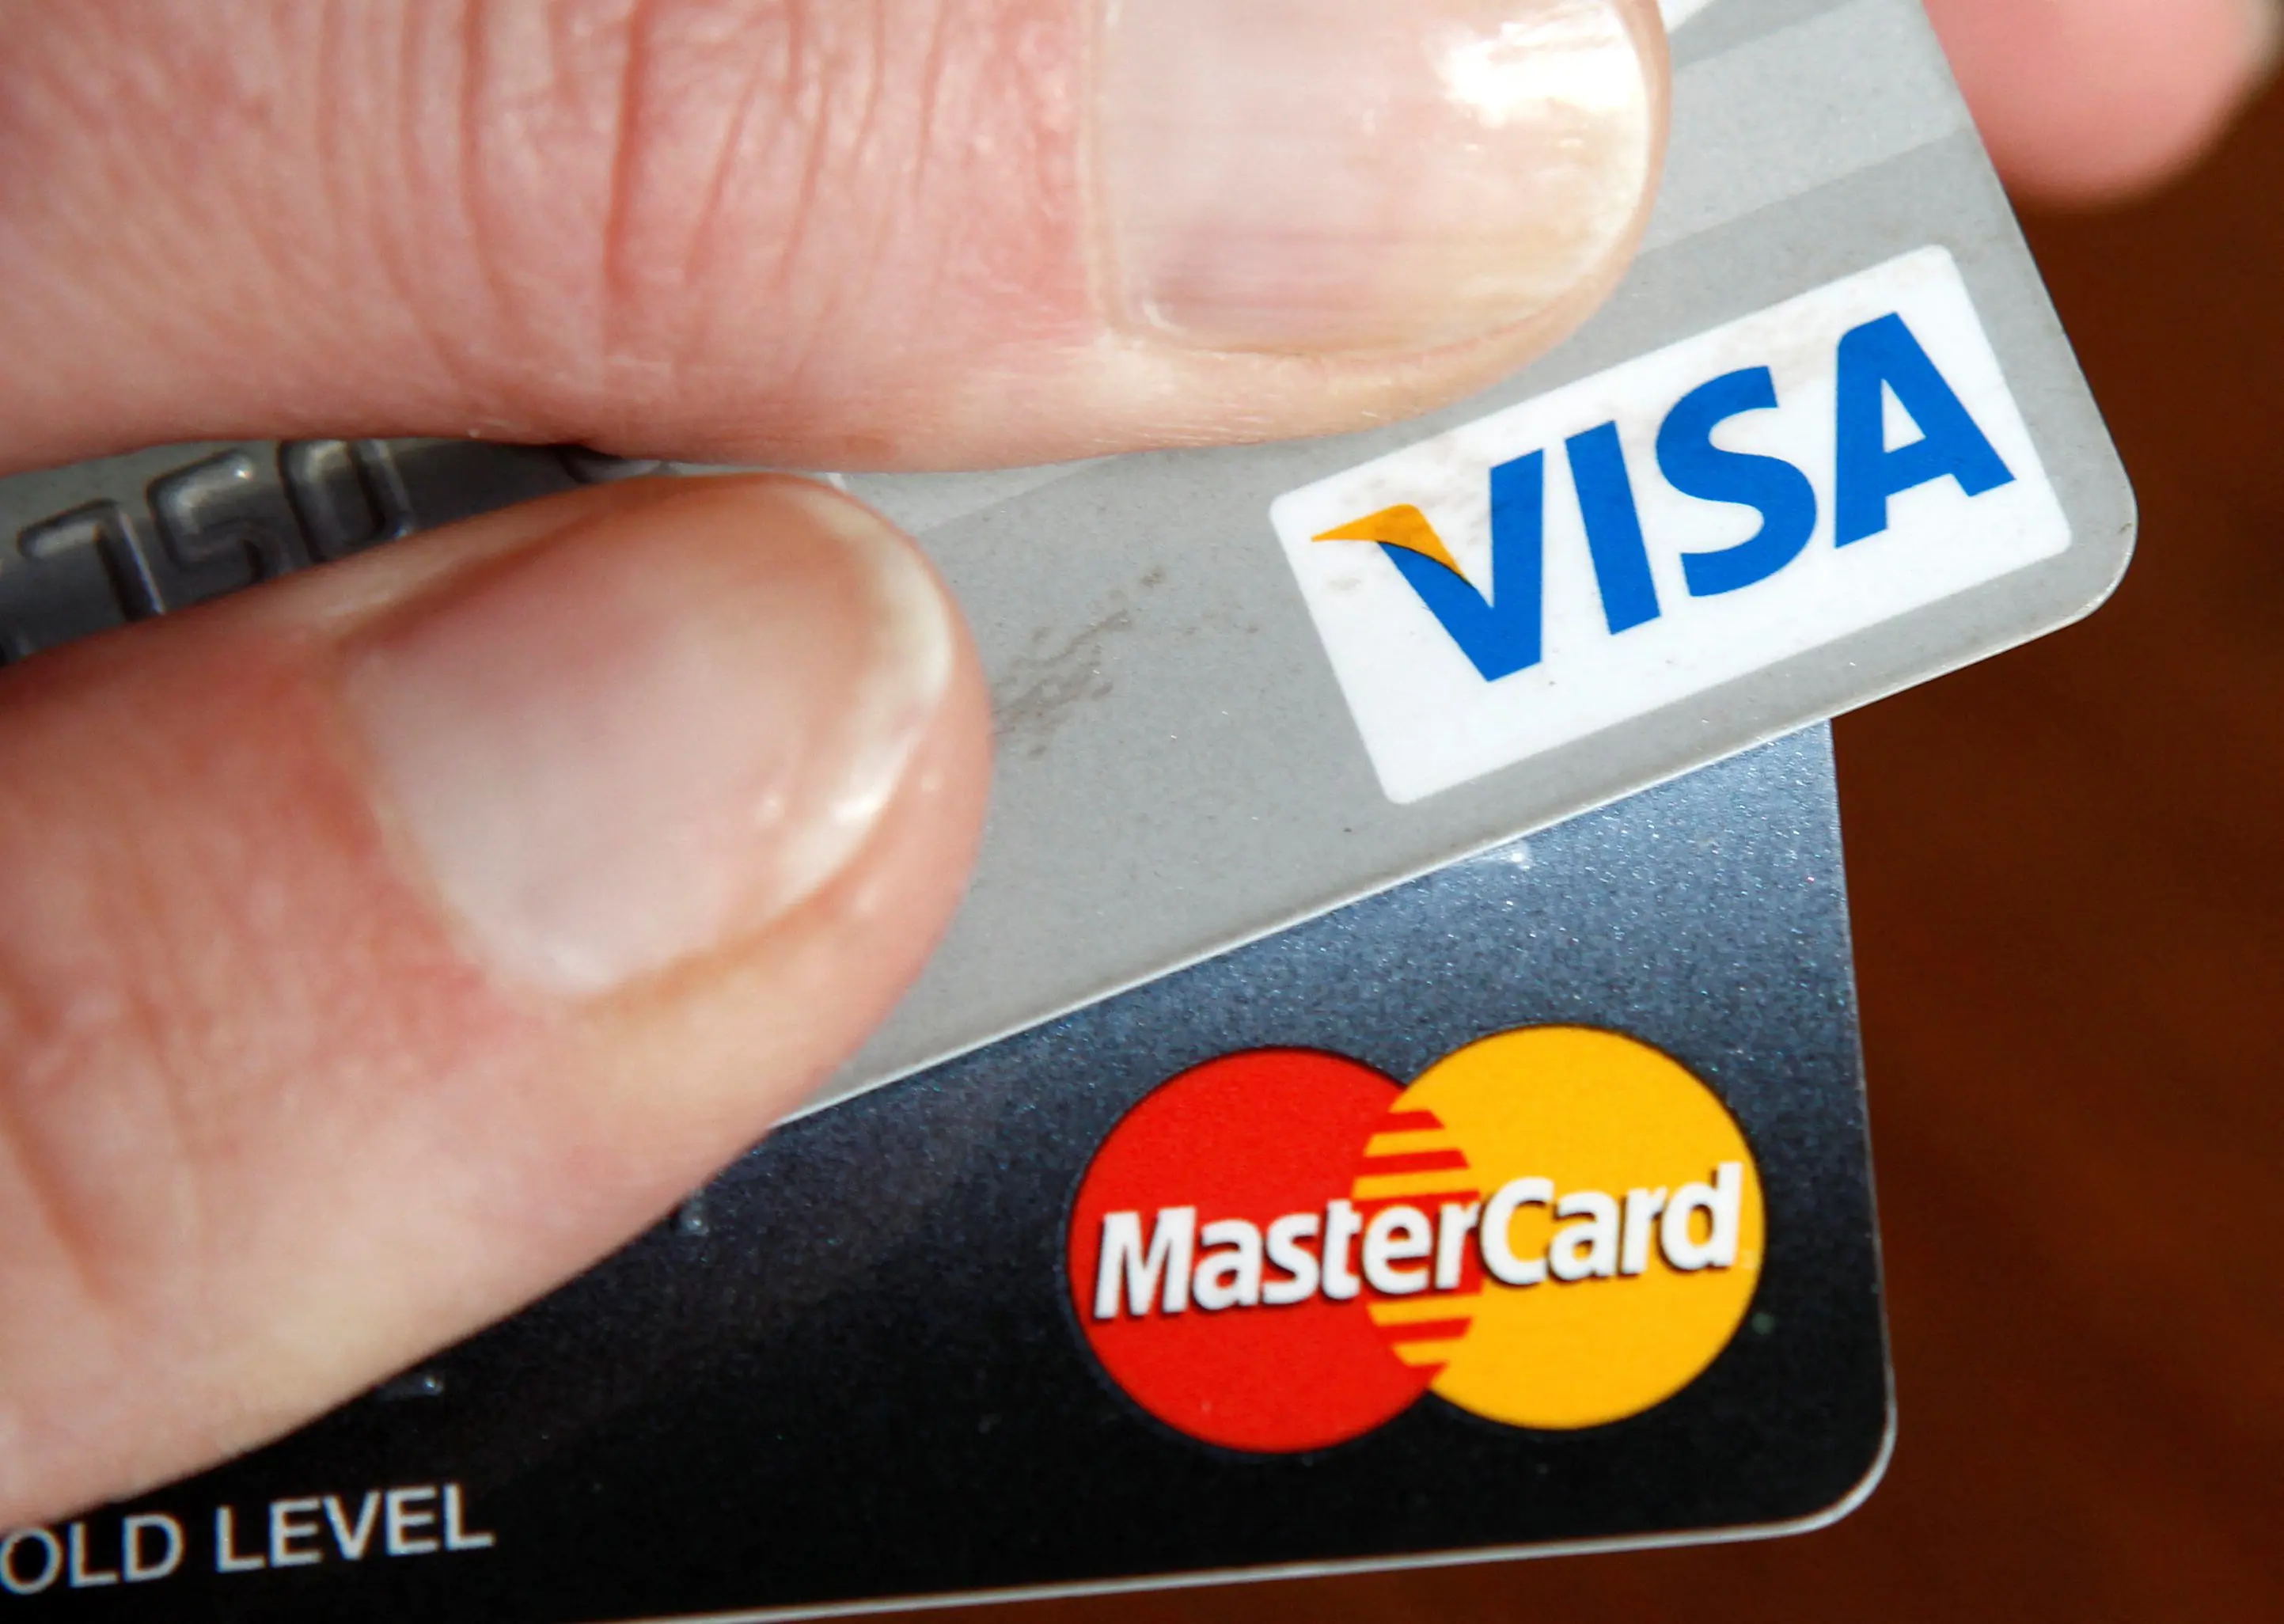 الصين تتفاوض مع "فيزا" و"ماستركارد" لخفض رسوم بطاقات الائتمان